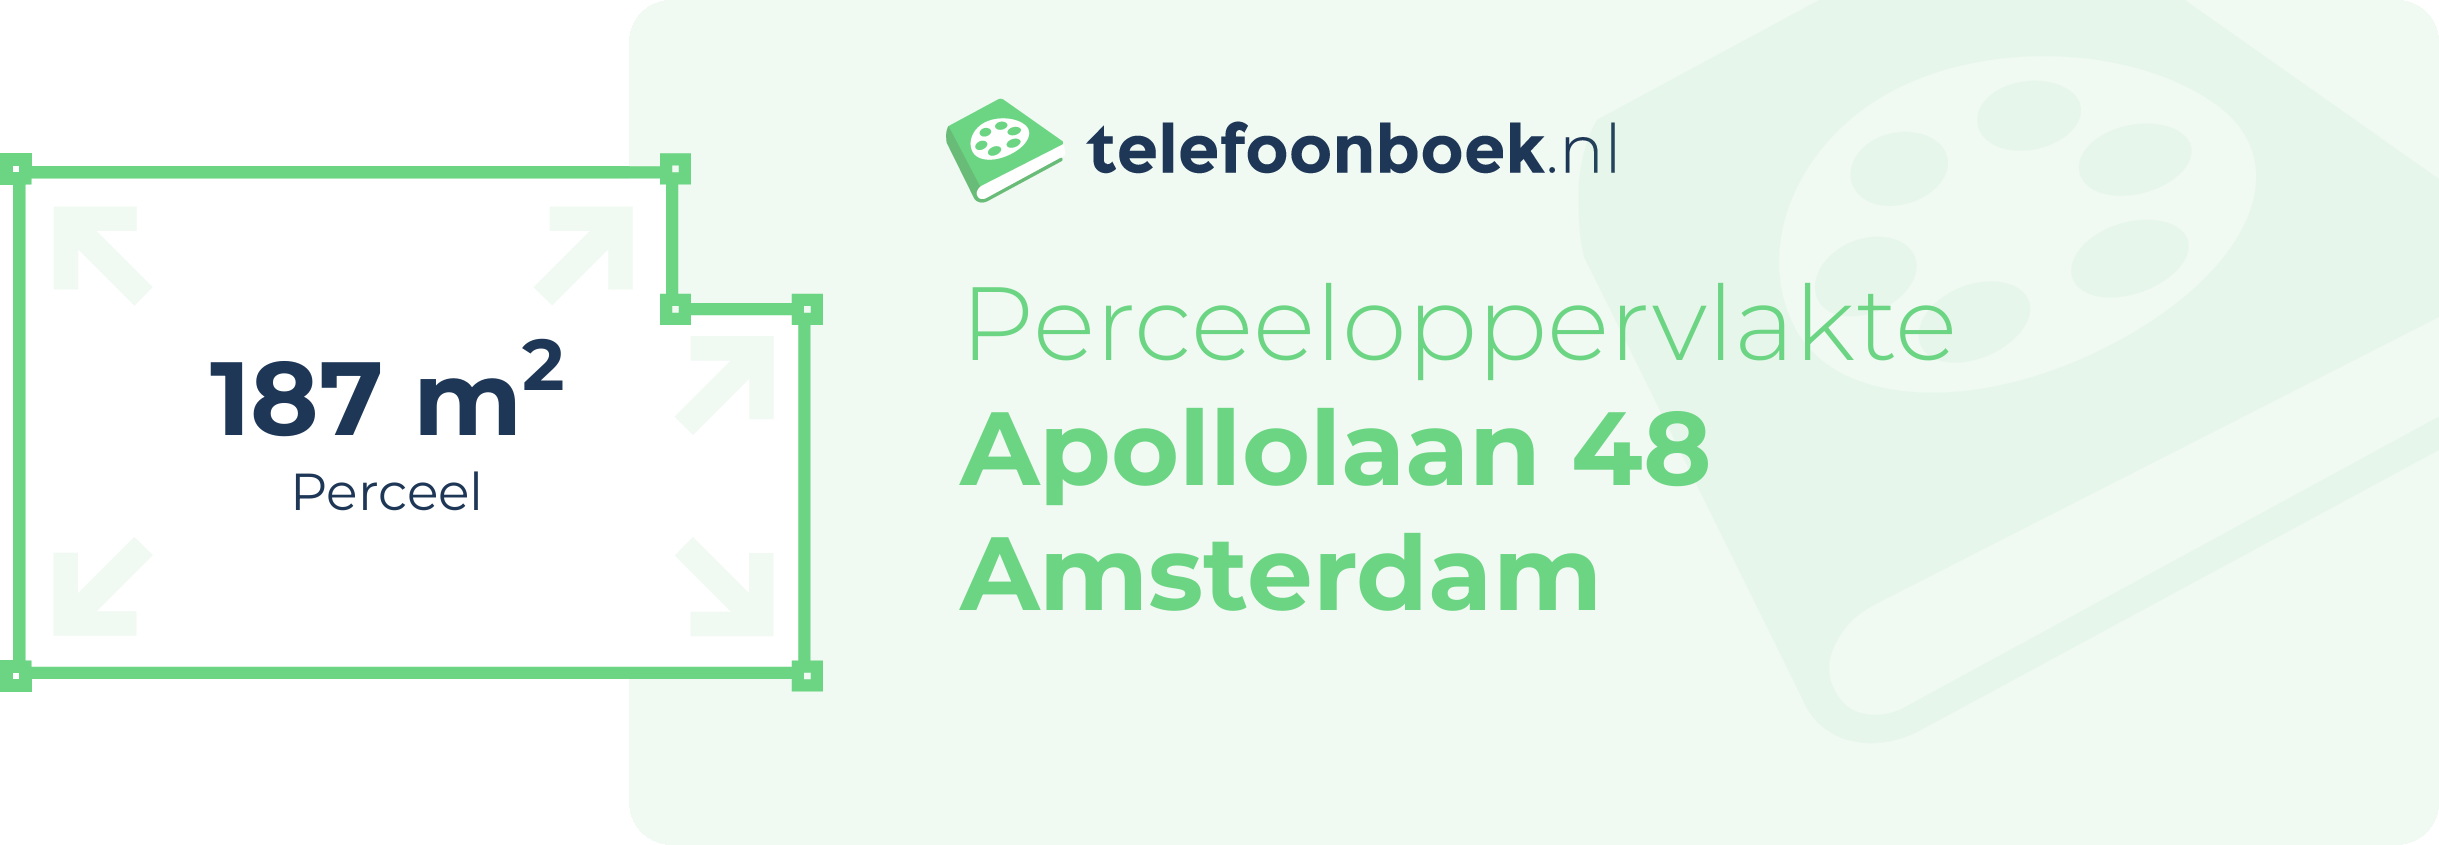 Perceeloppervlakte Apollolaan 48 Amsterdam